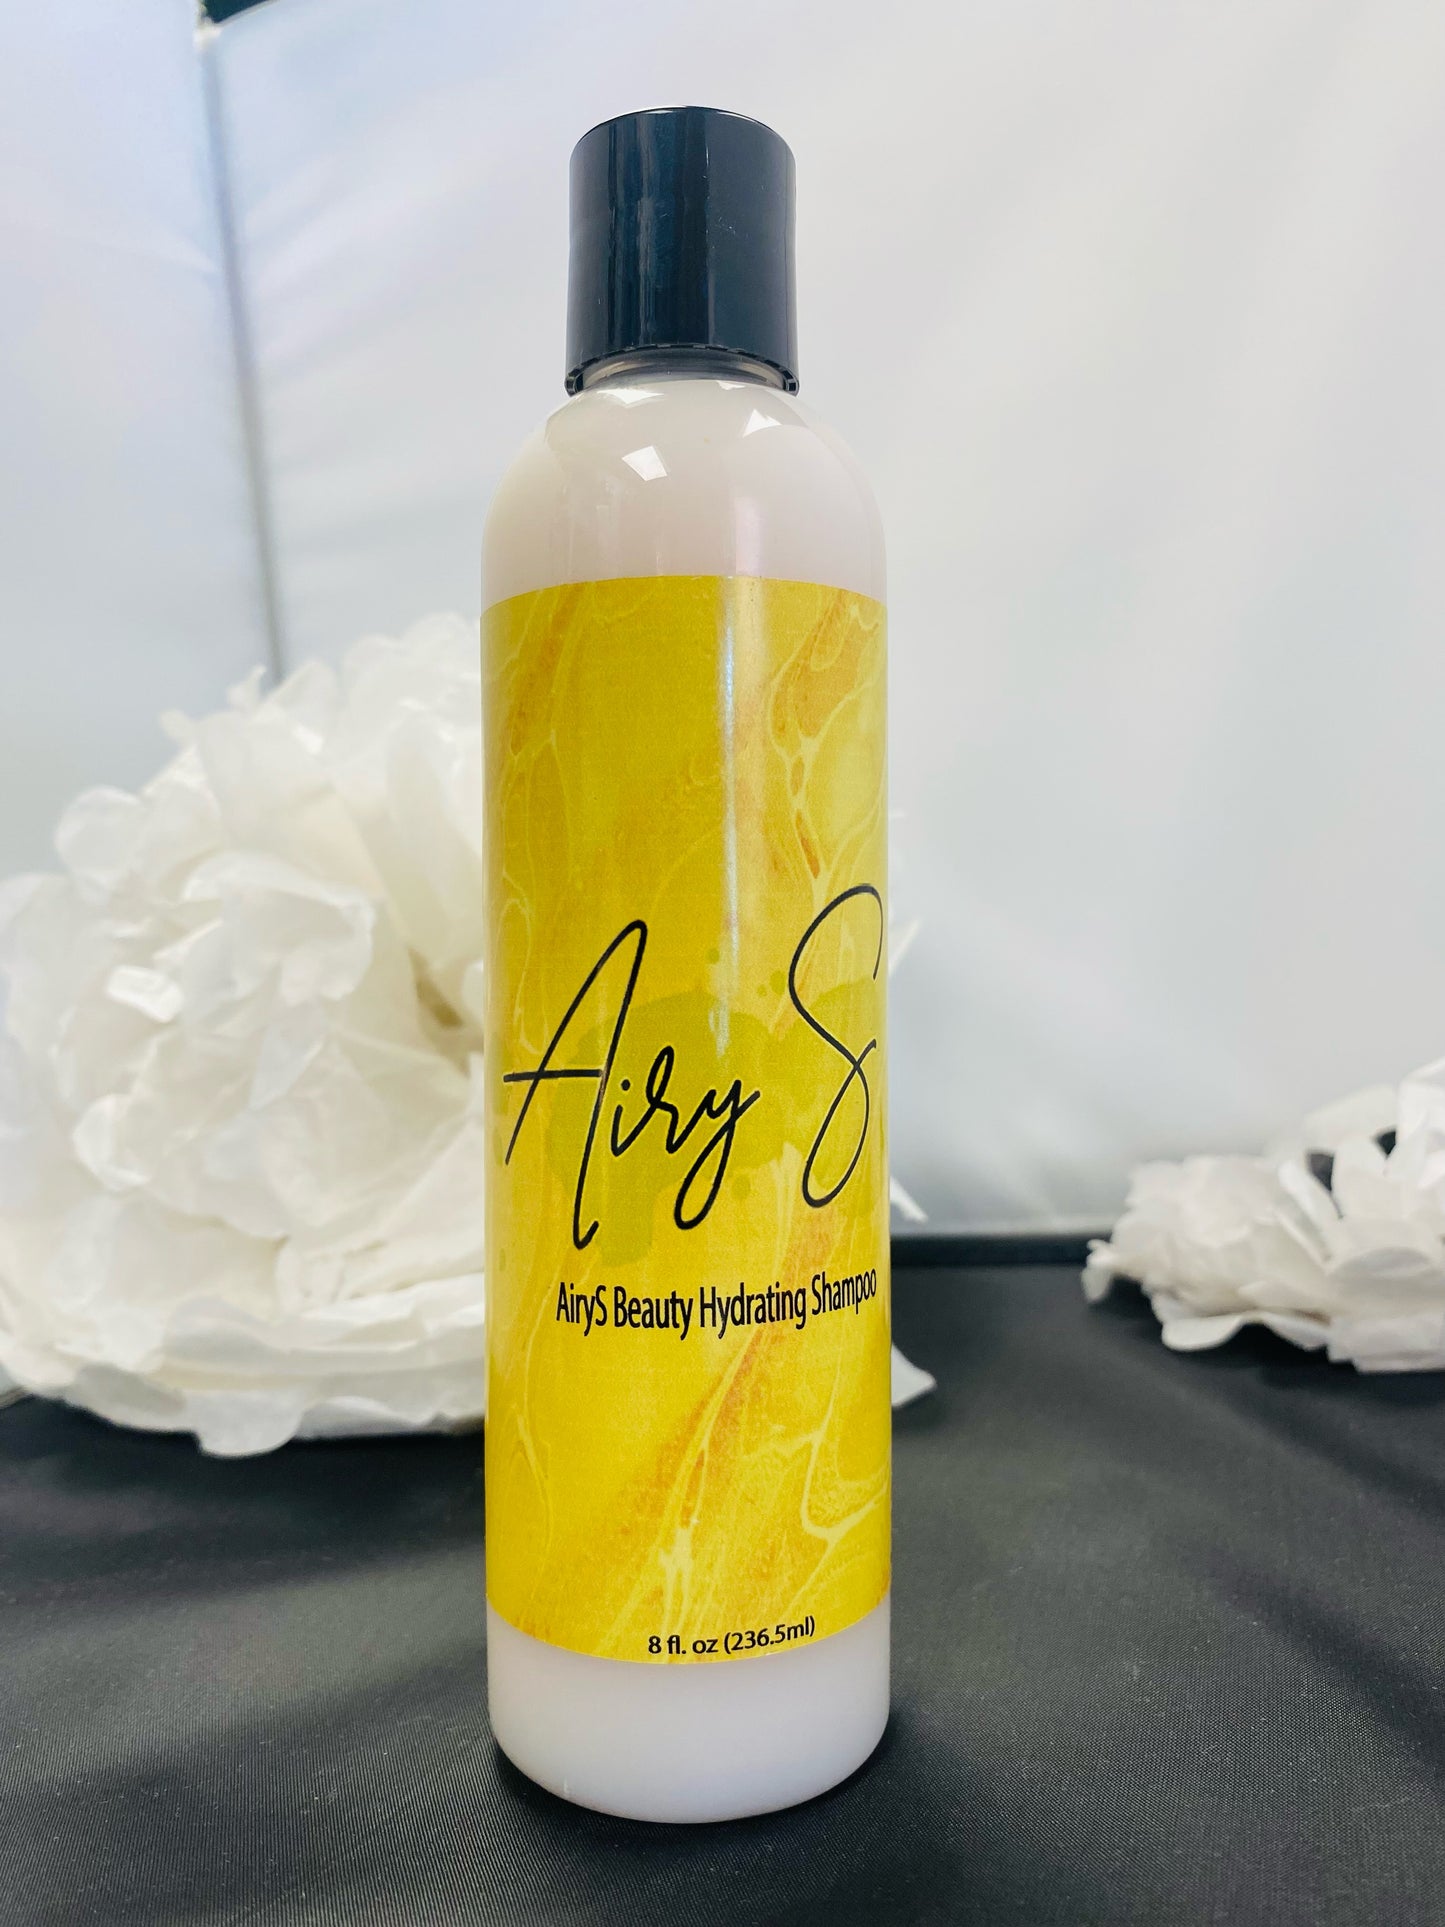 AiryS Beauty Hydrating Shampoo